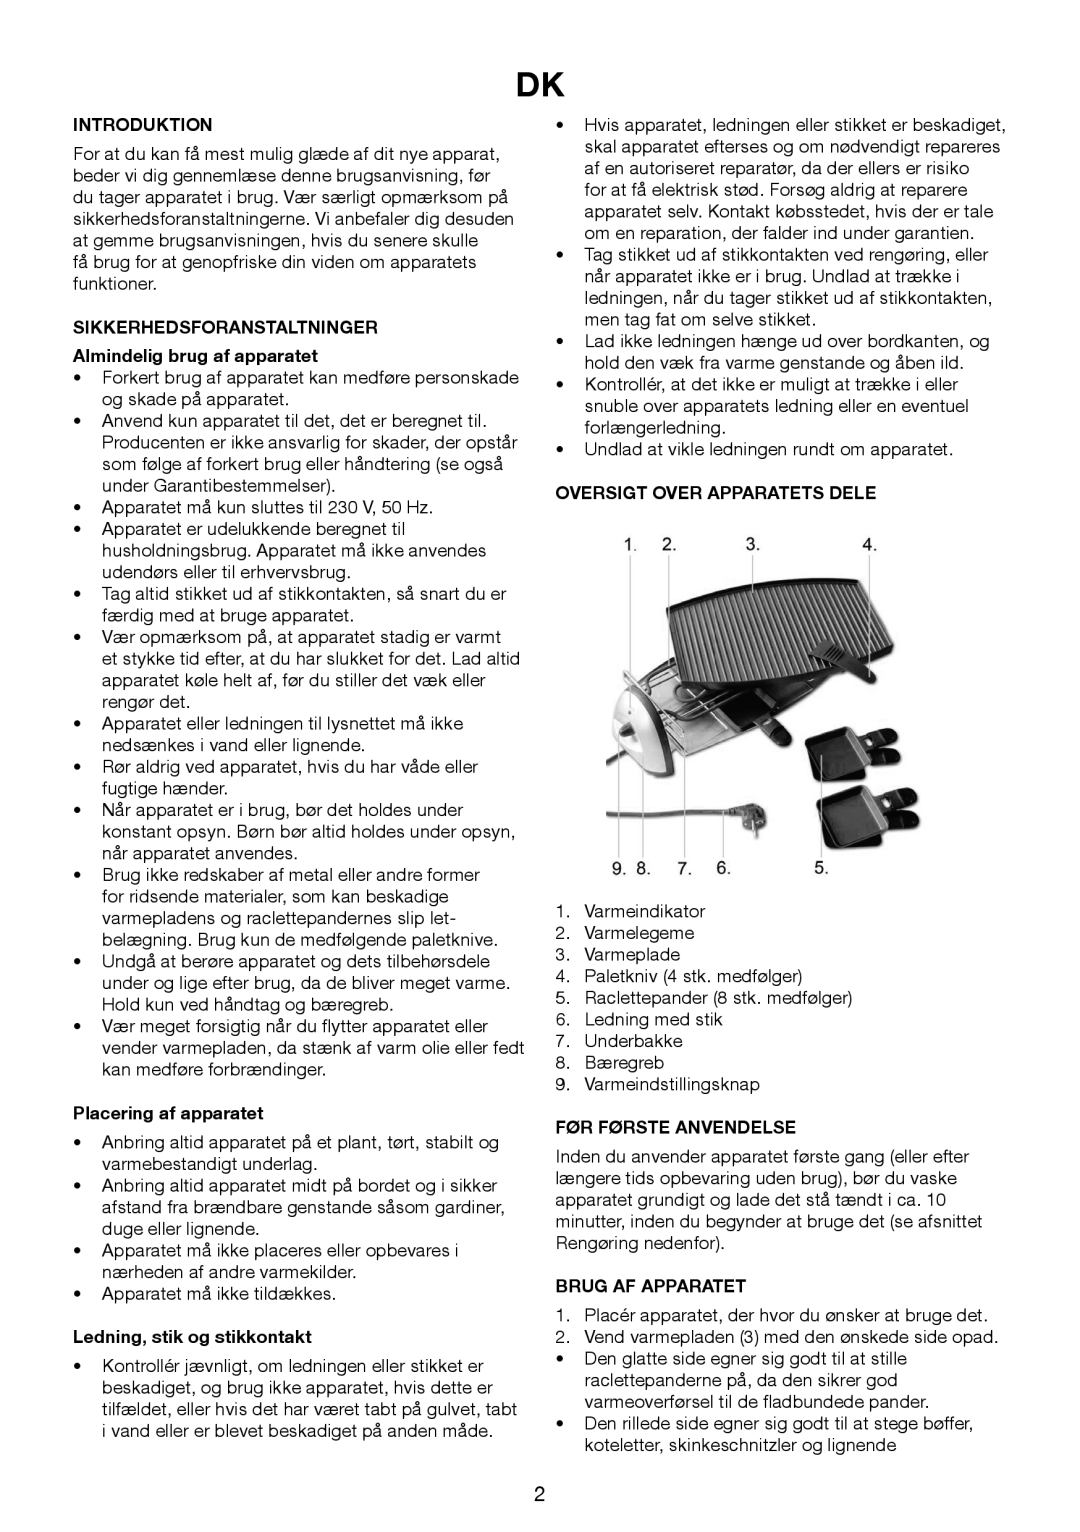 Melissa 243-045 manual Introduktion, Sikkerhedsforanstaltninger, Almindelig brug af apparatet, Placering af apparatet 